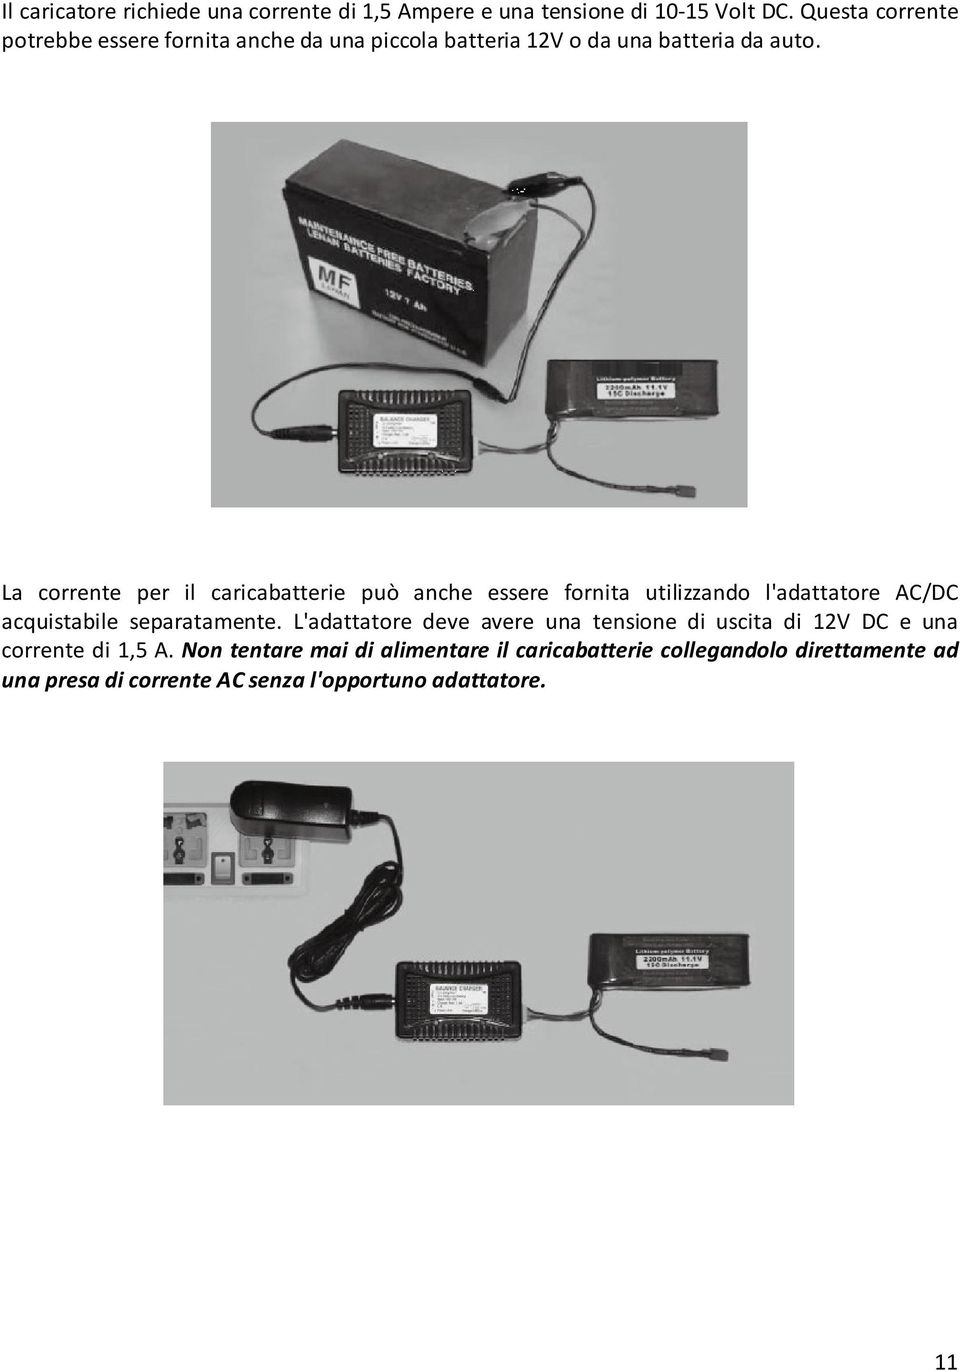 La corrente per il caricabatterie può anche essere fornita utilizzando l'adattatore AC/DC acquistabile separatamente.